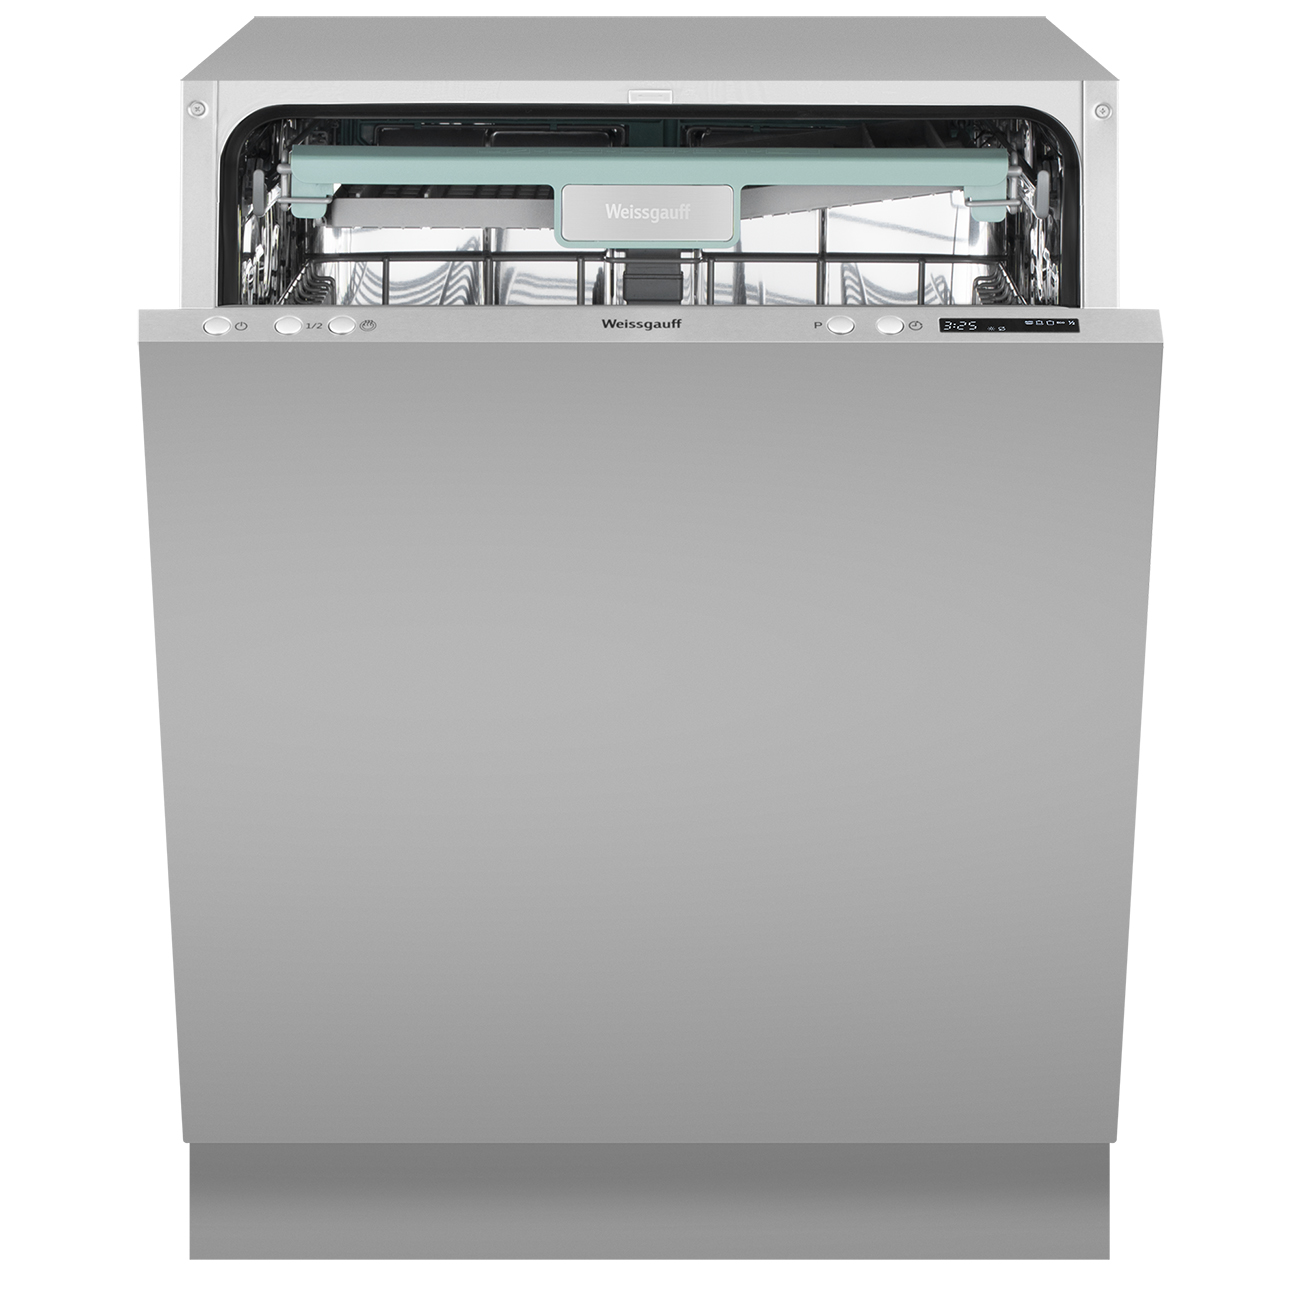 Встраиваемая посудомоечная машина Weissgauff BDW 6043 D посудомоечная машина weissgauff tdw 4057 mini turbo dry белый